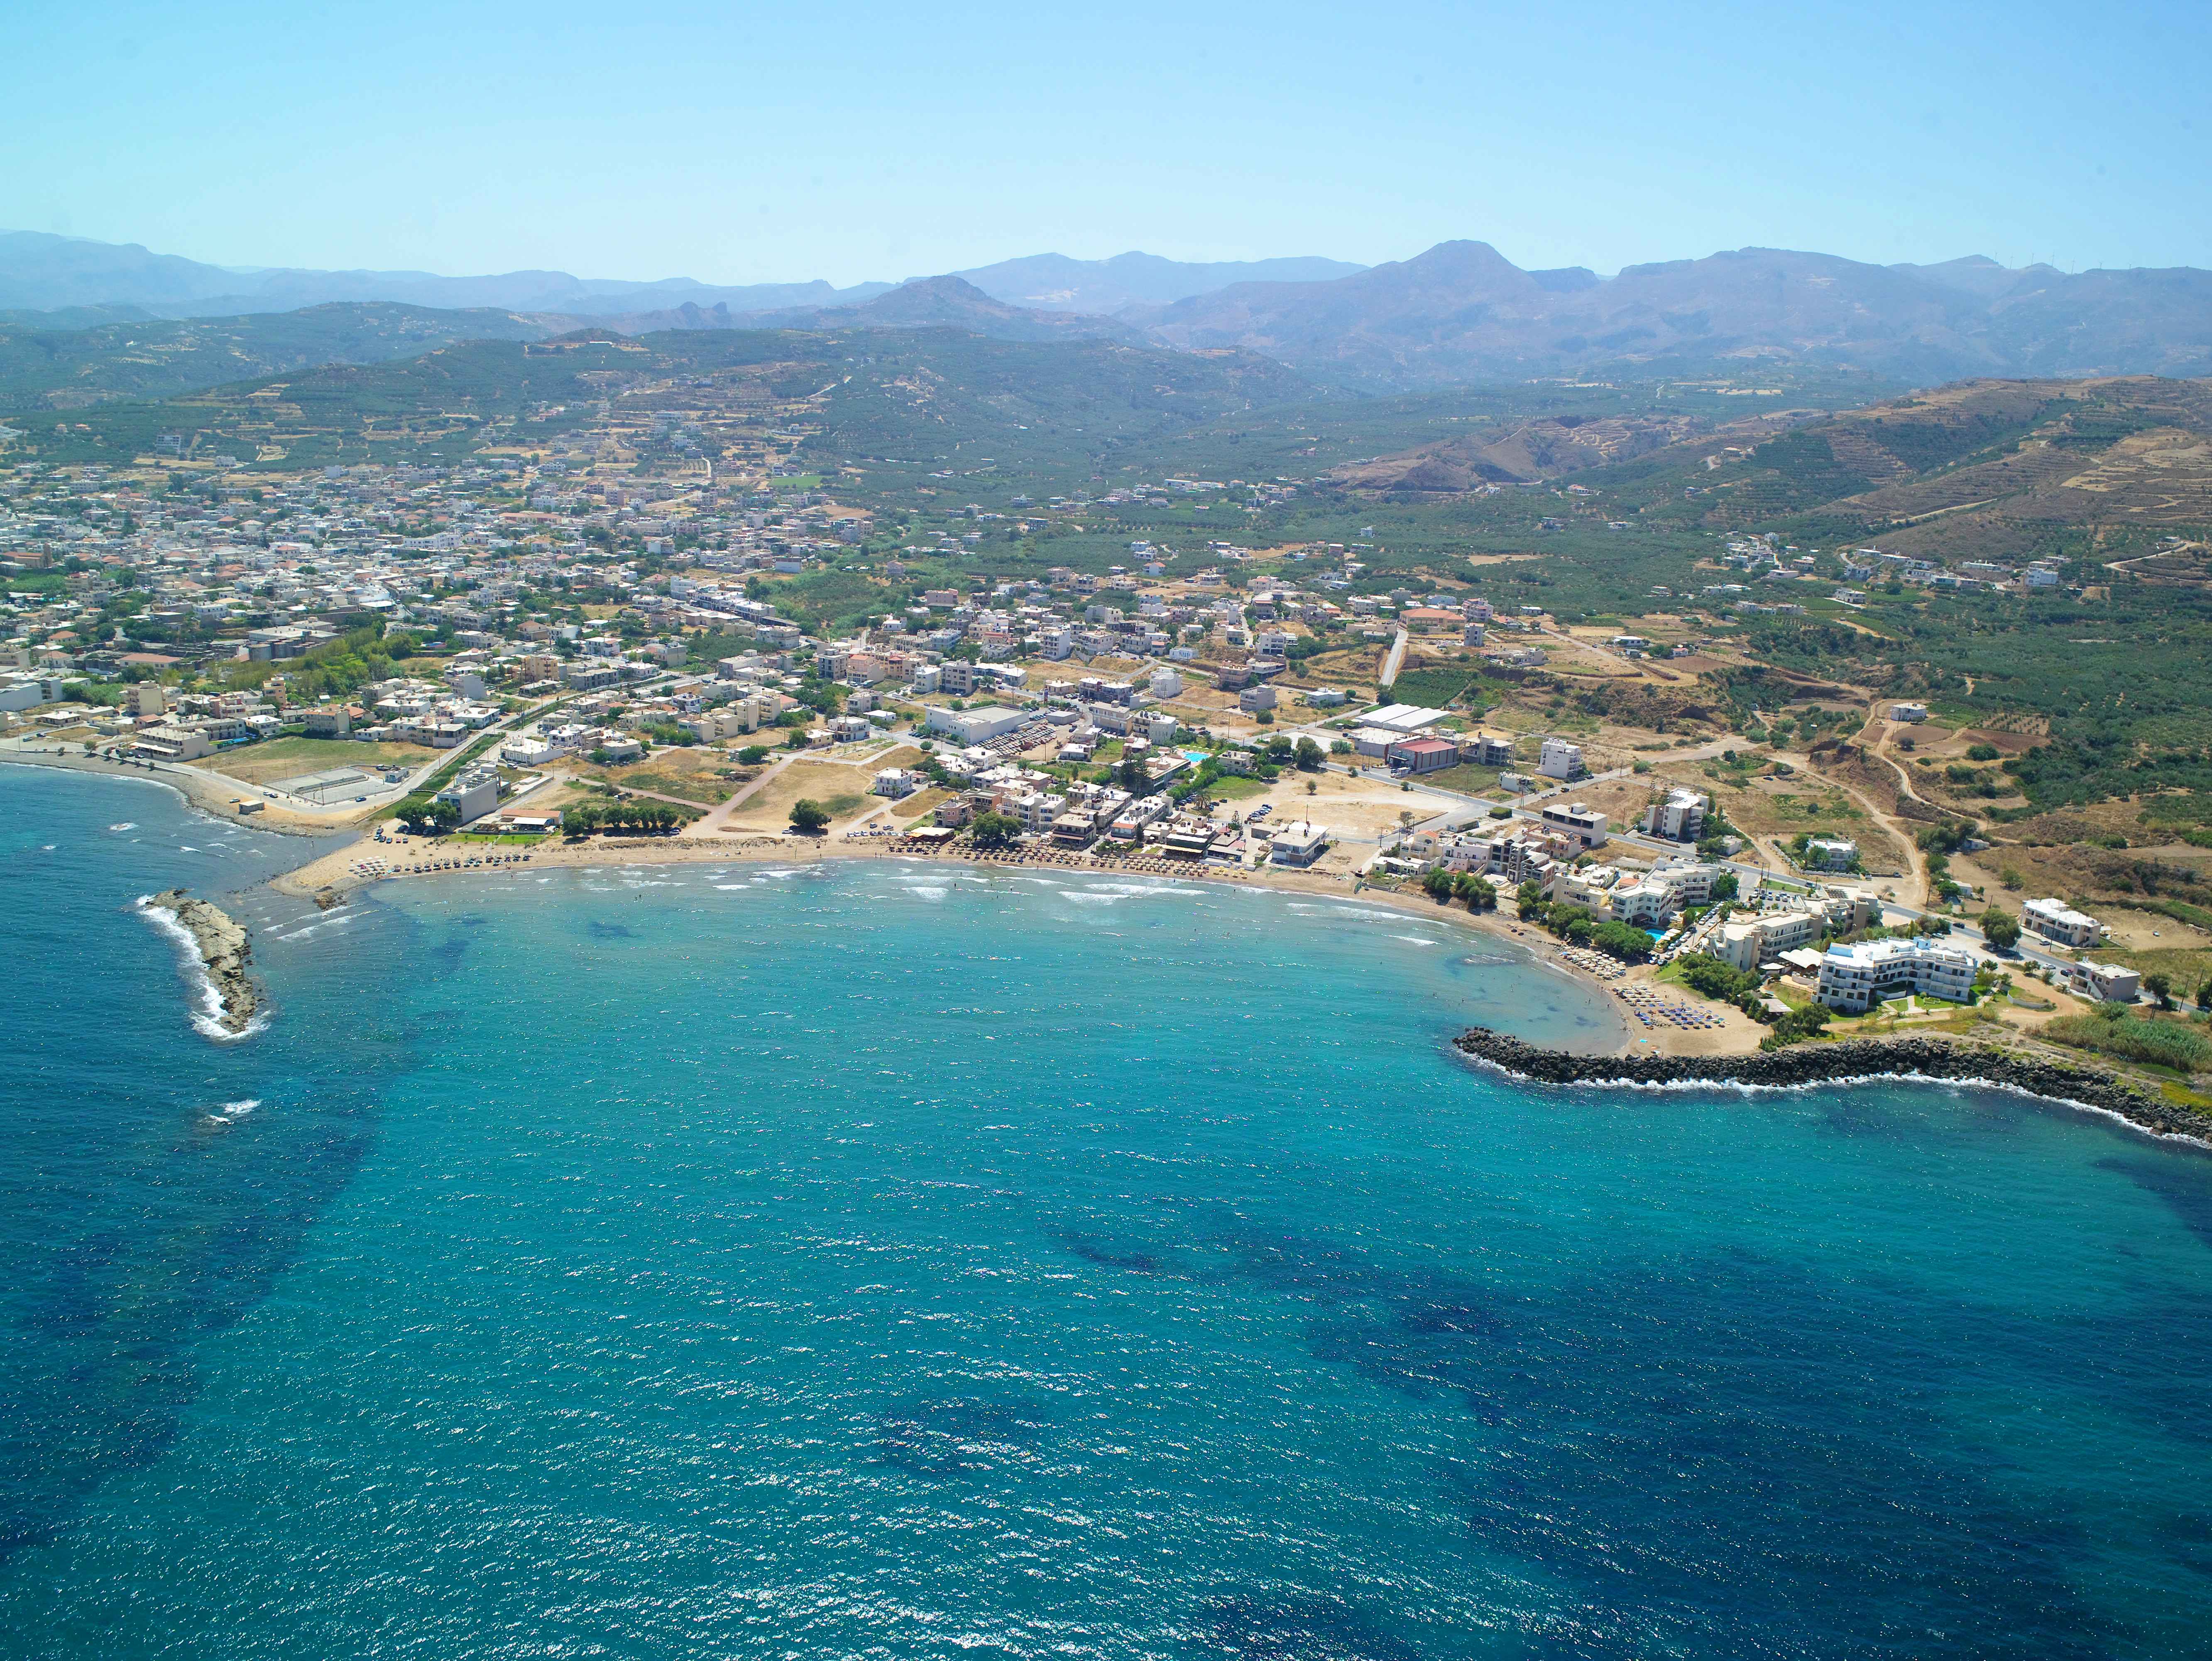 Molos Bay Hotel (crete)